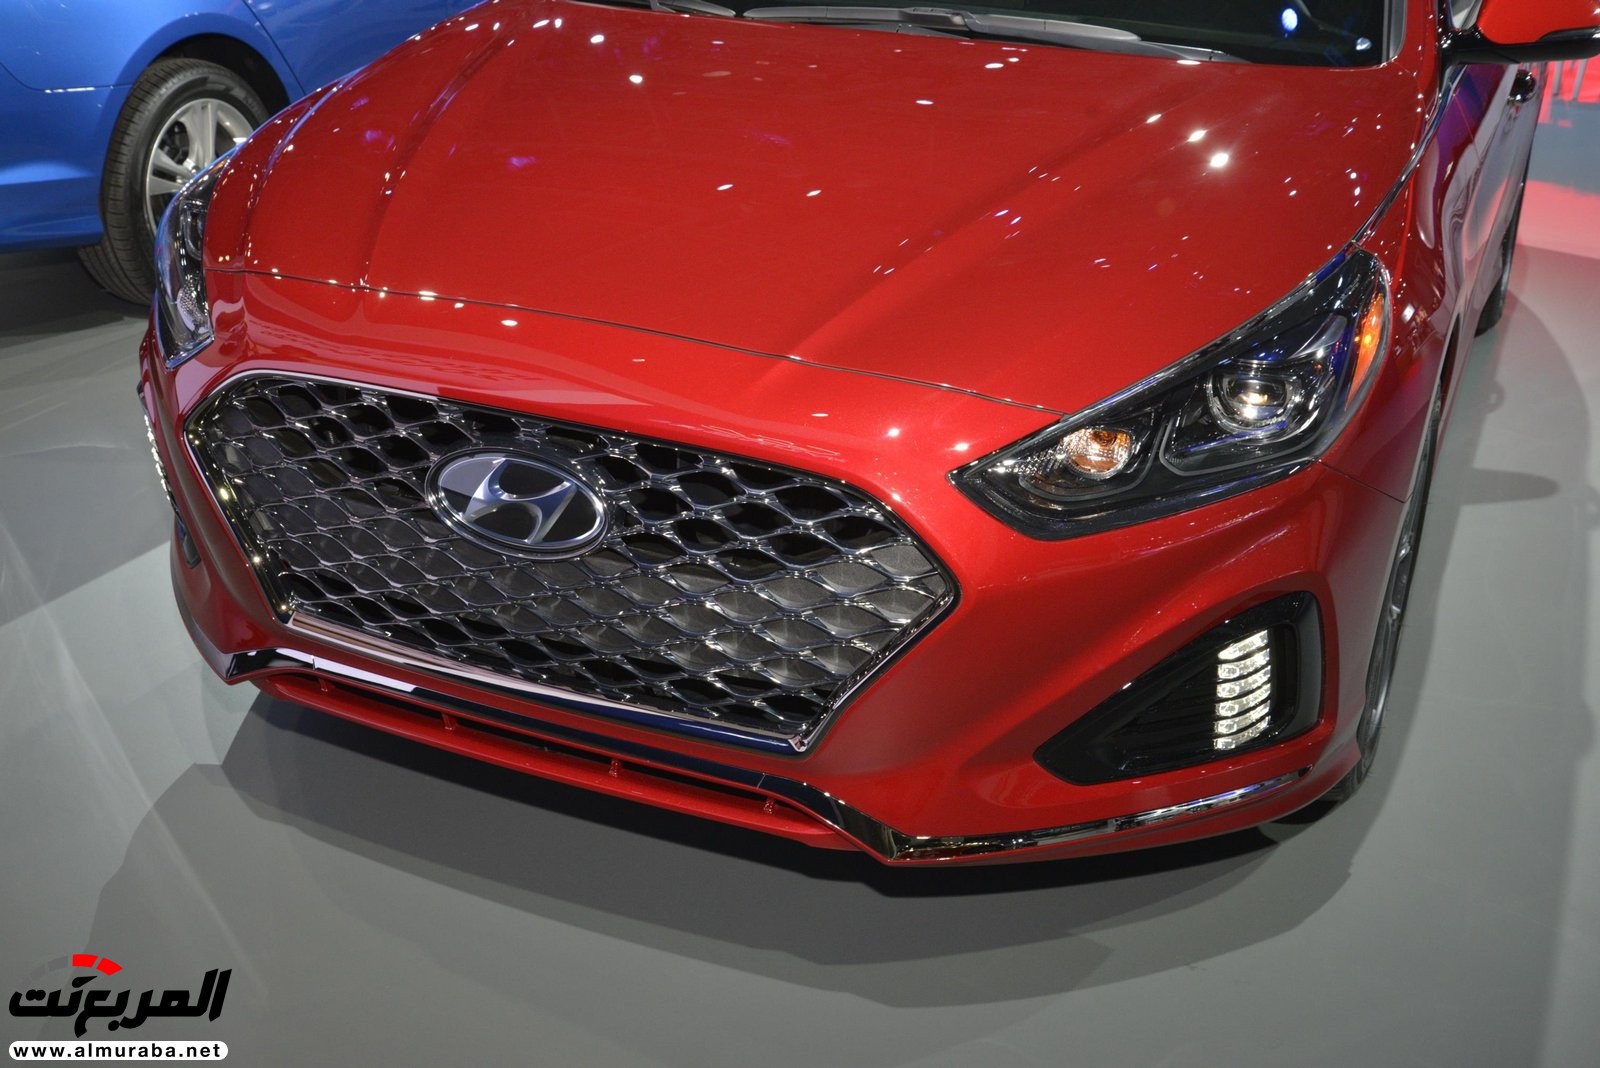 هيونداي سوناتا 2018 المحدثة تحصل على تحديثات خارجية وداخلية "صور وفيديو واسعار" Hyundai Sonata 18